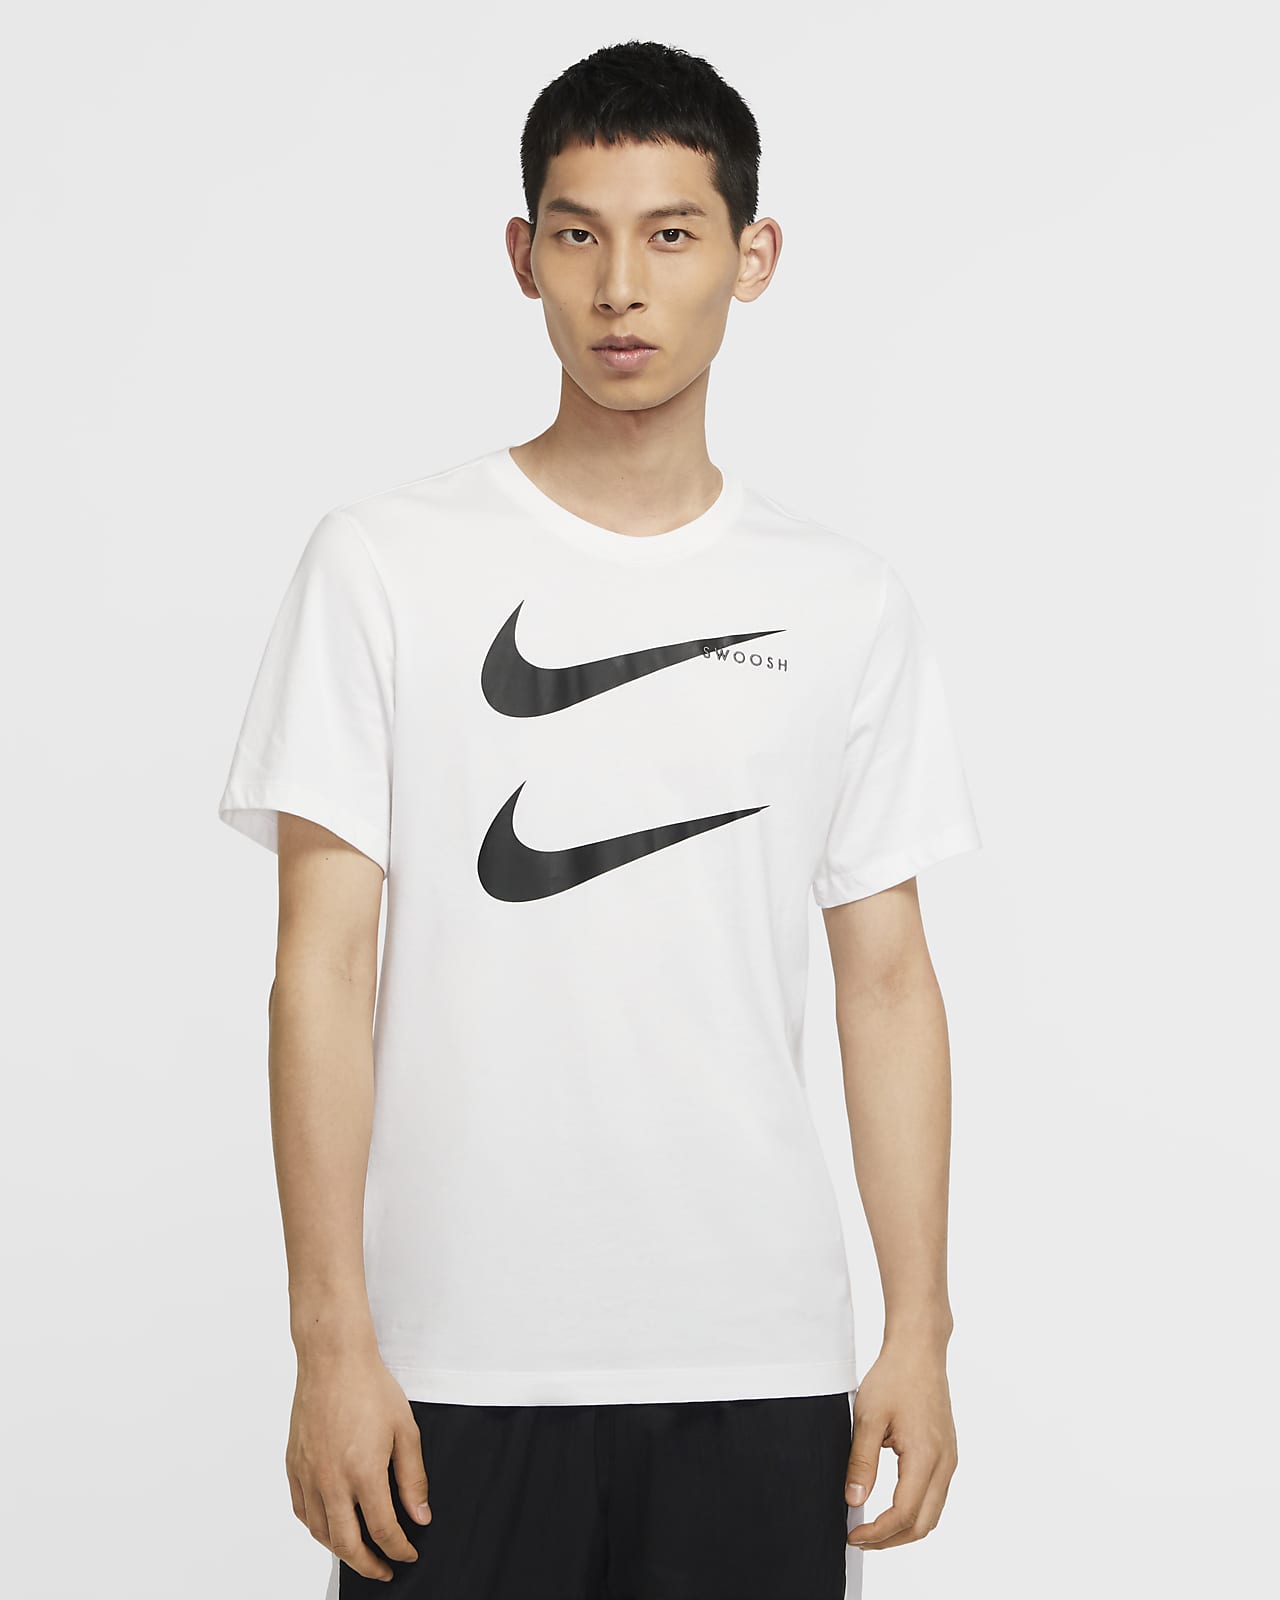 Nike Sportswear Swoosh Men's T-Shirt. Nike LU